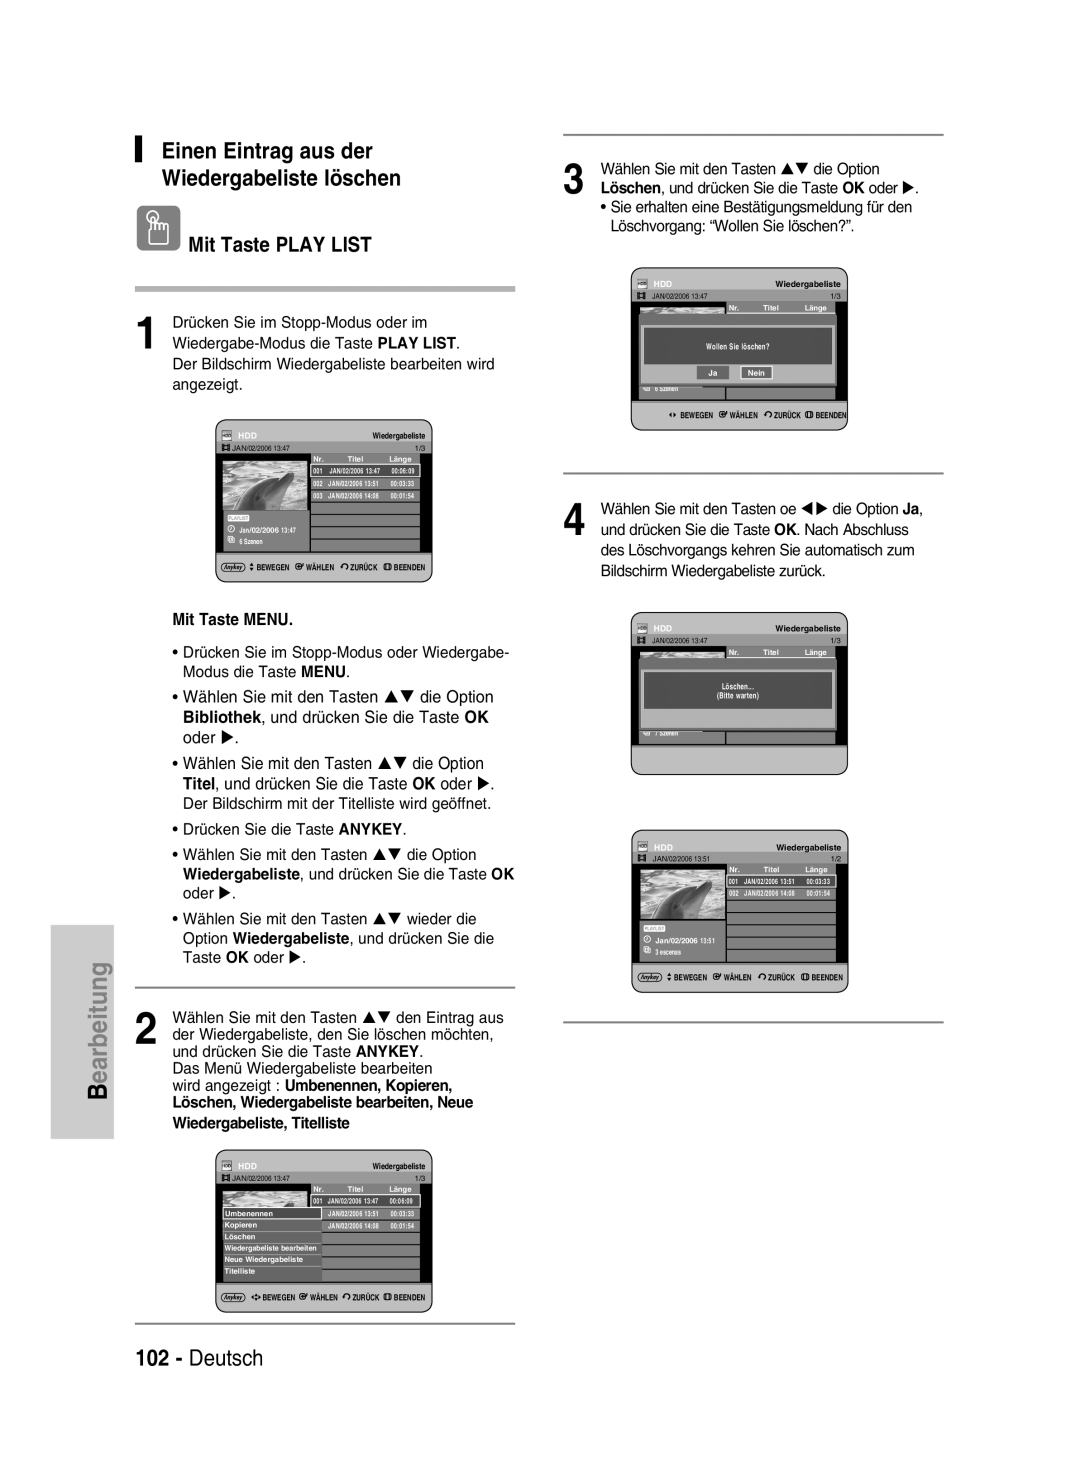 Samsung DVD-HR734/XEG manual Einen Eintrag aus der Wiedergabeliste löschen, Deutsch, Bearbeitung, Mit Taste PLAY LIST 